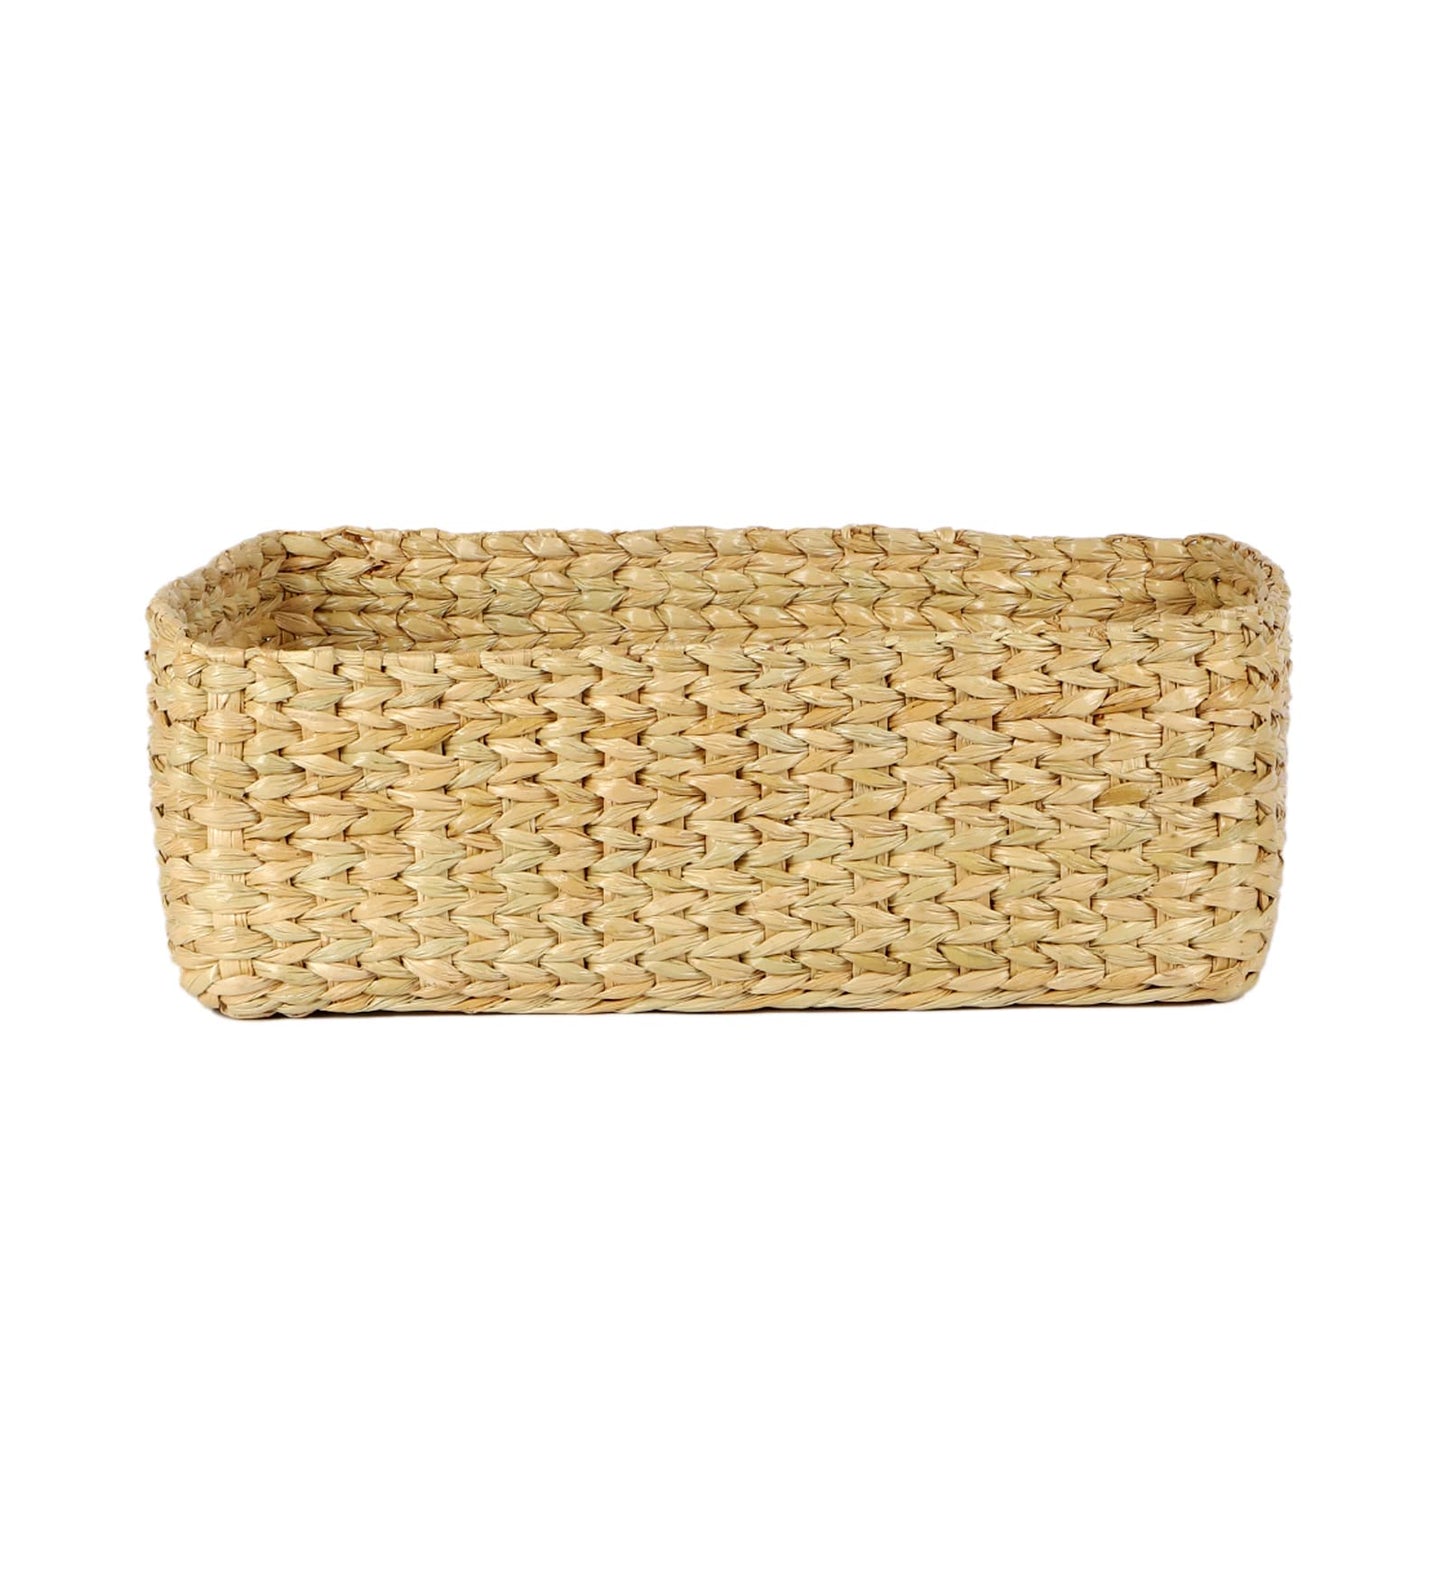 AKWAY Storage Baskets | Cane or Bamboo Basket | Tray Online as Gift Hamper Basket/Wardrobe Basket (Medium) (MEDIUM) - Akway